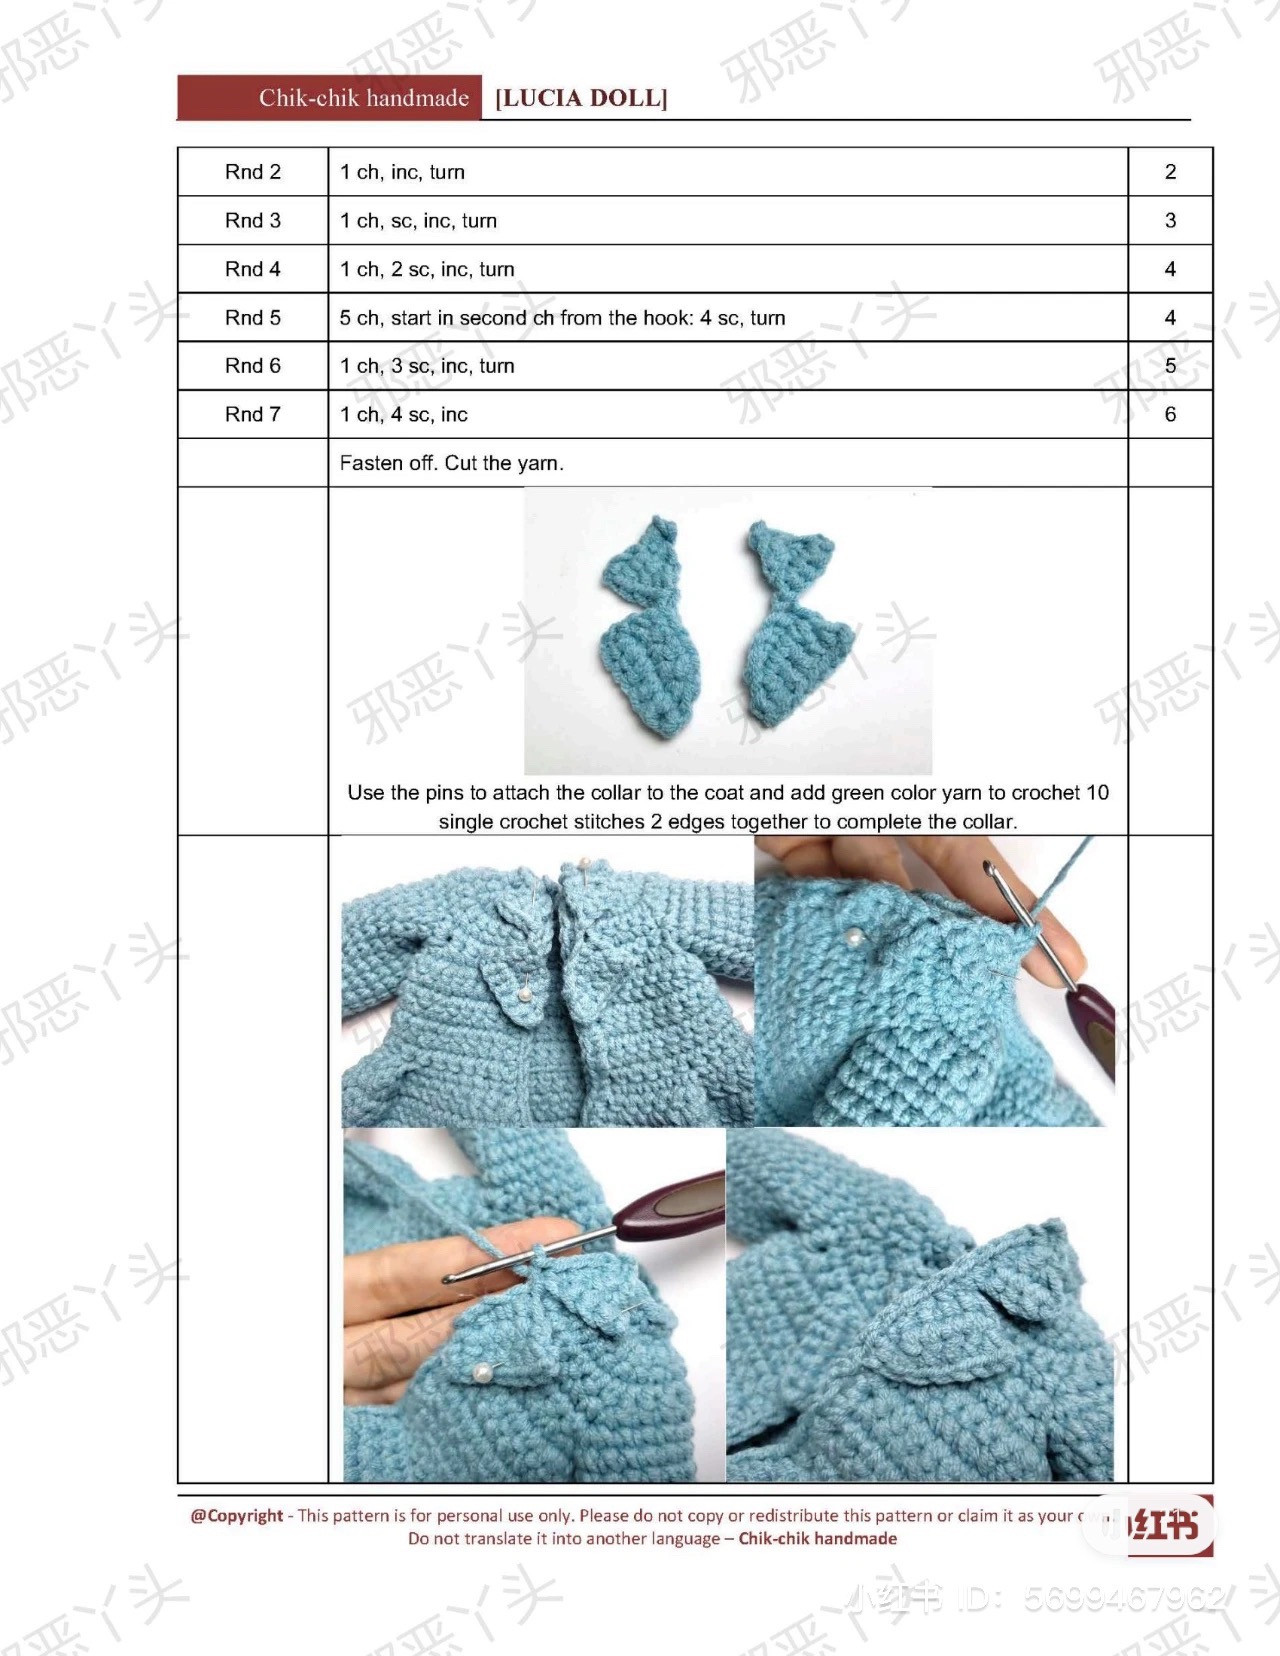 lucia doll crochet pattern